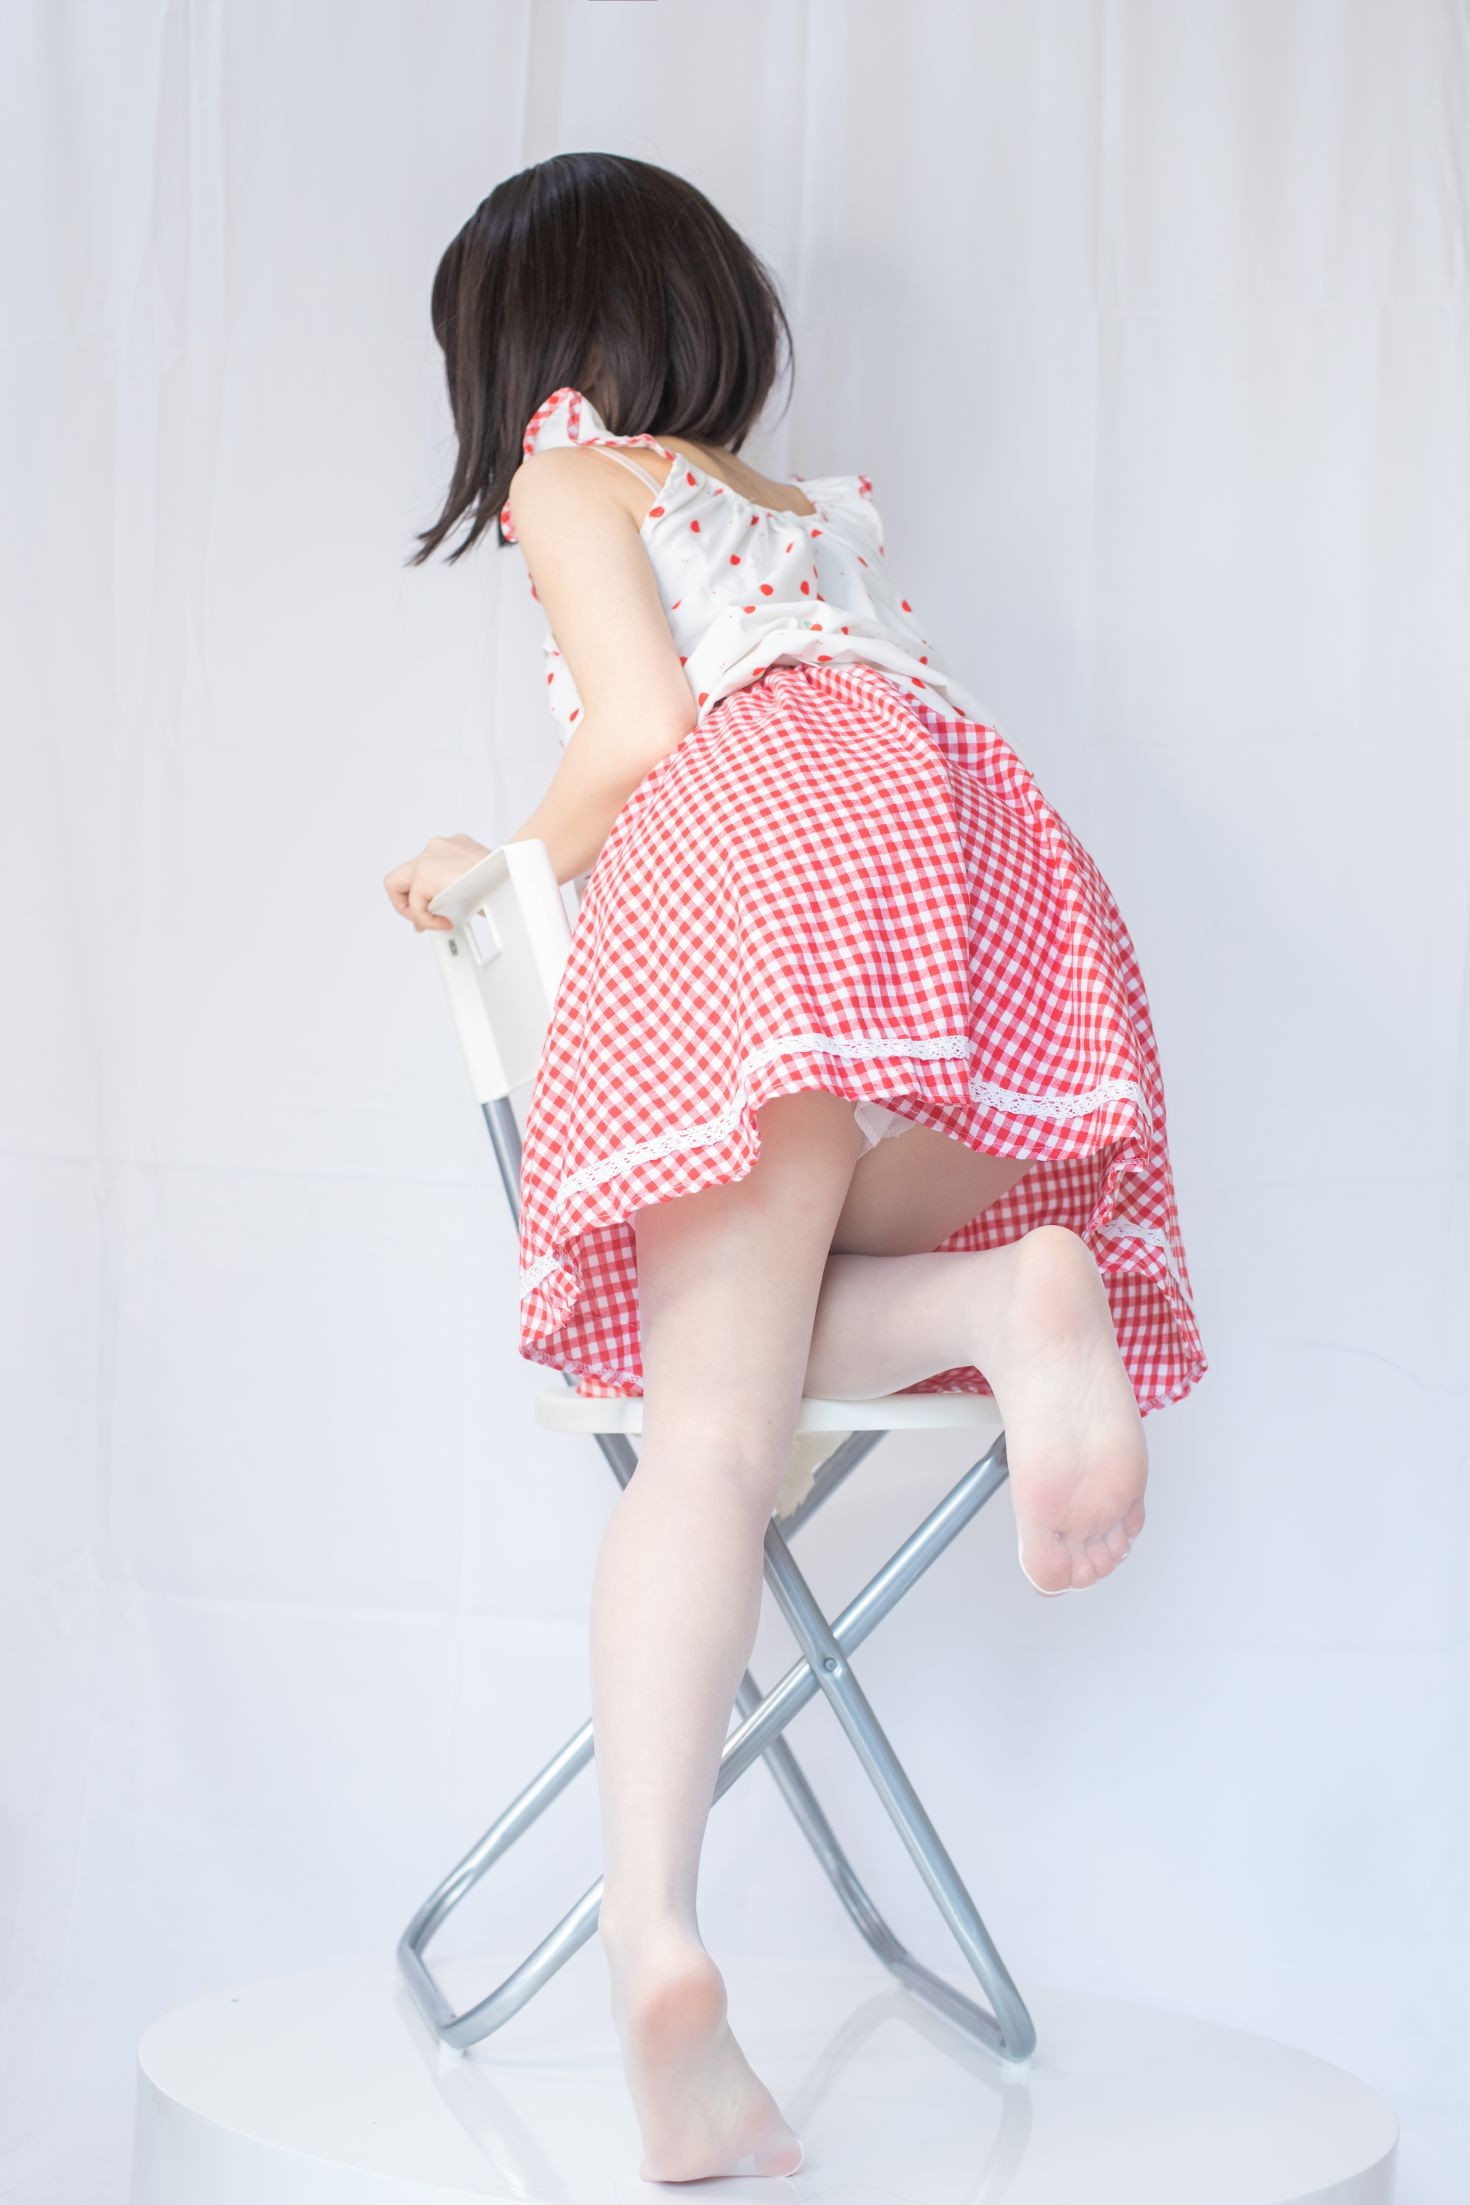 美女动漫博主神沢永莉性感Cosplay写真粉色格子裙 (2)